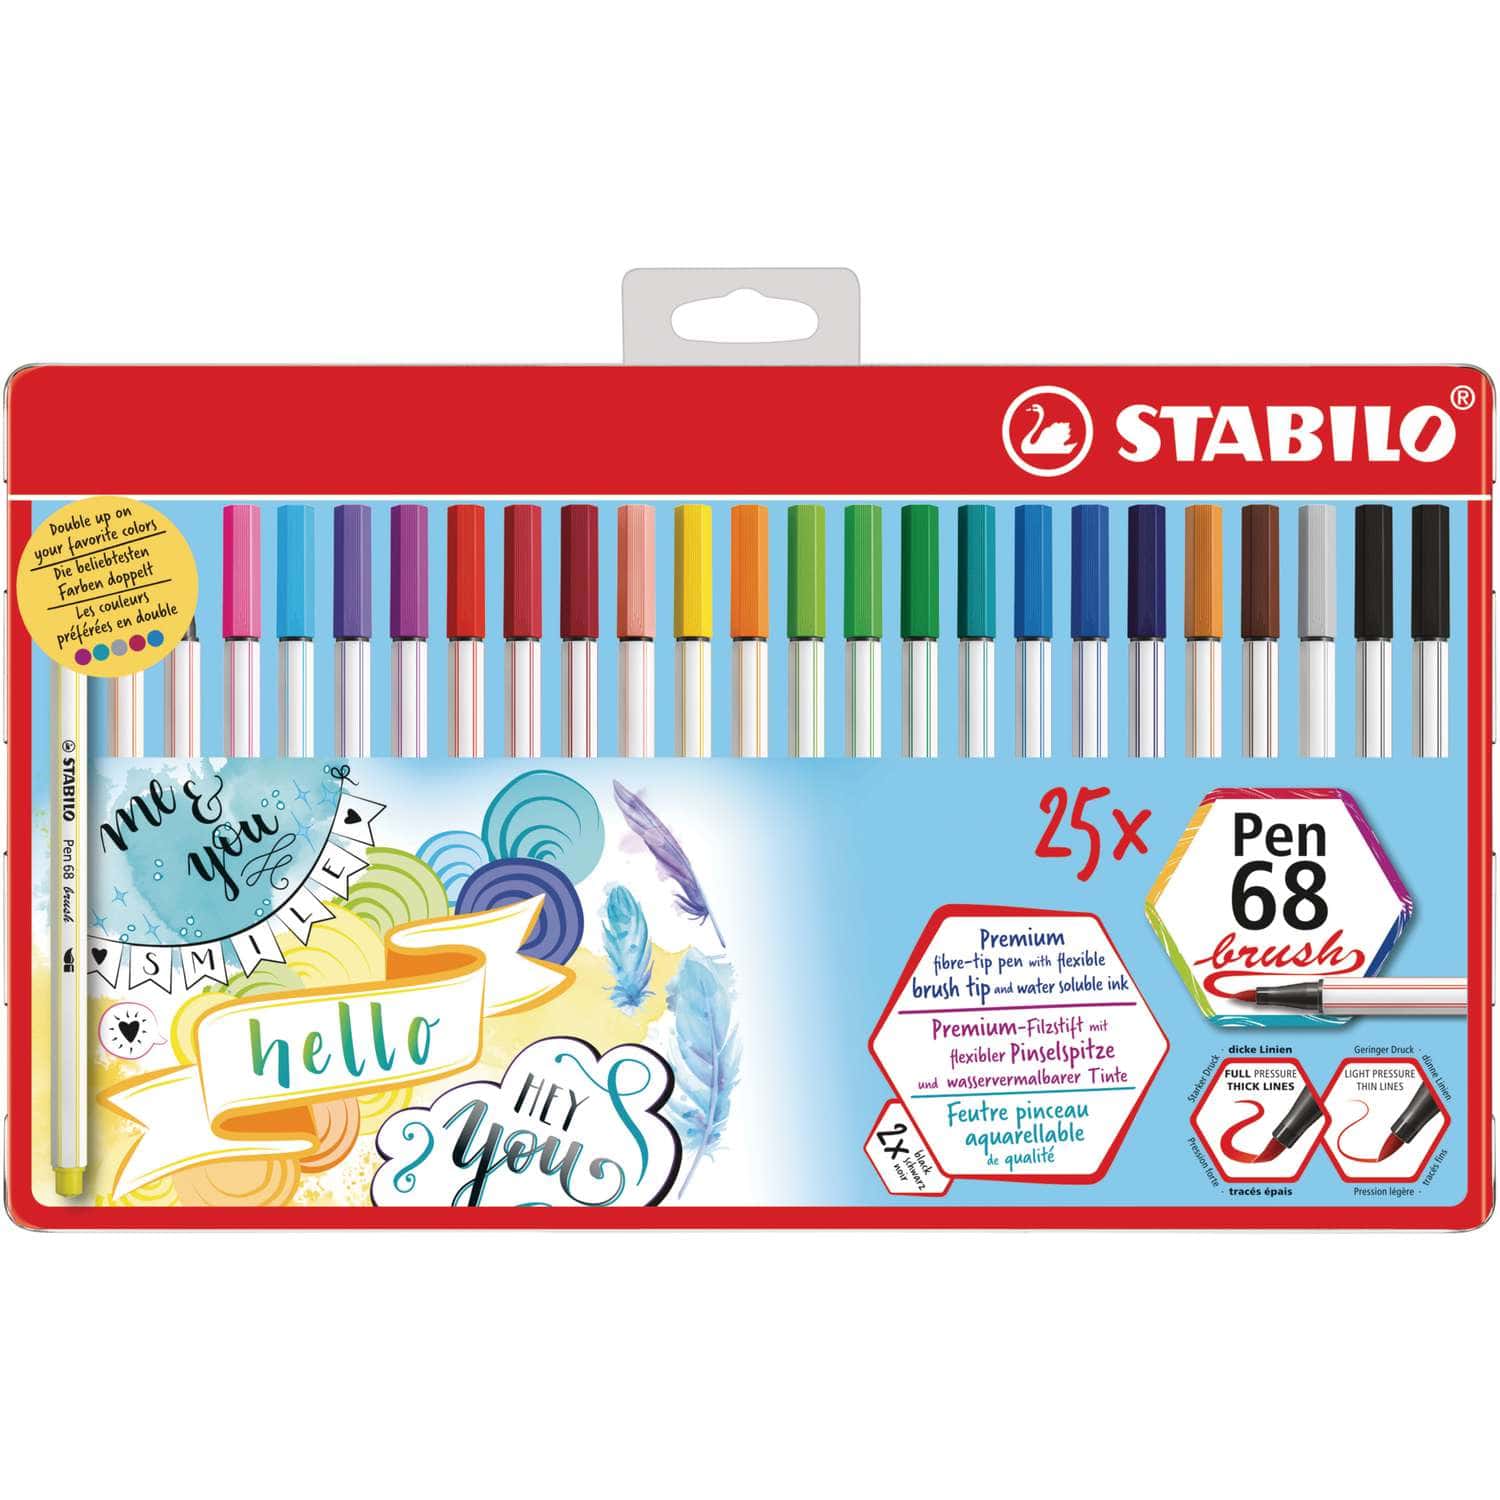 STABILO® Pen 68 brush Sets im Metalletui